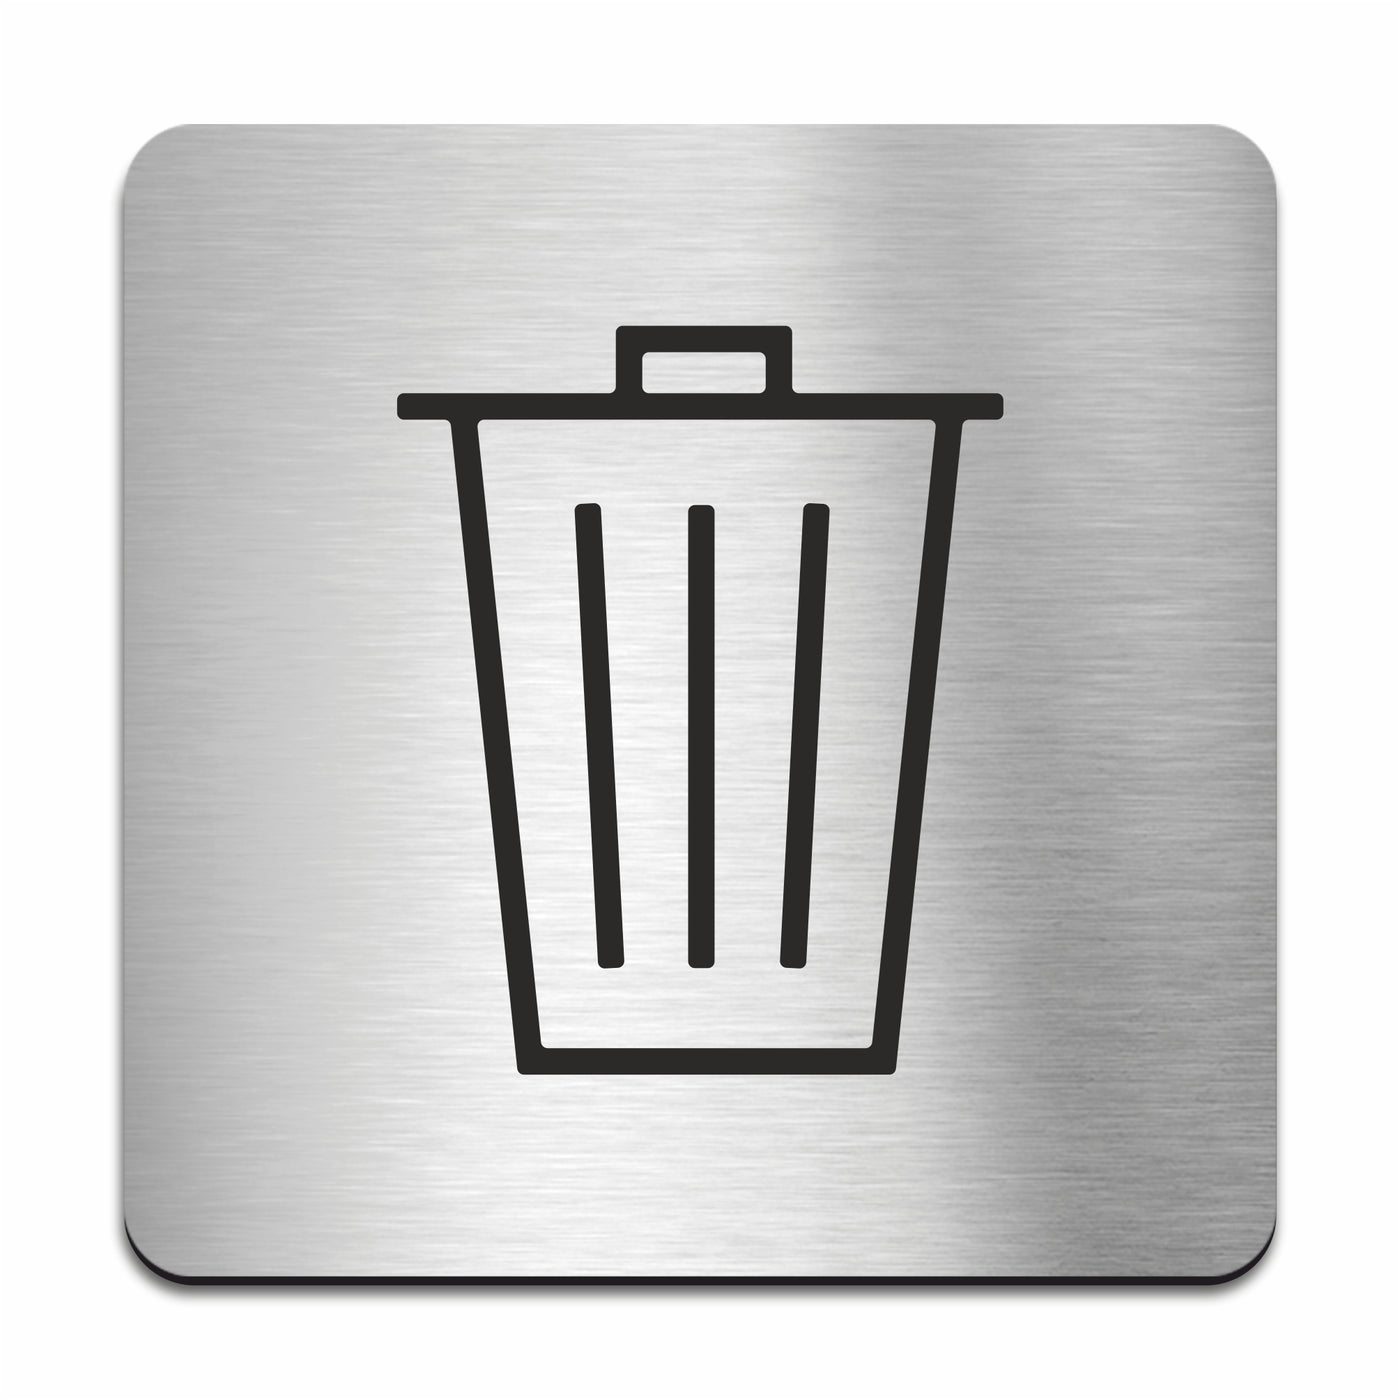 Metal Trash Bin Sign - Stainless steel